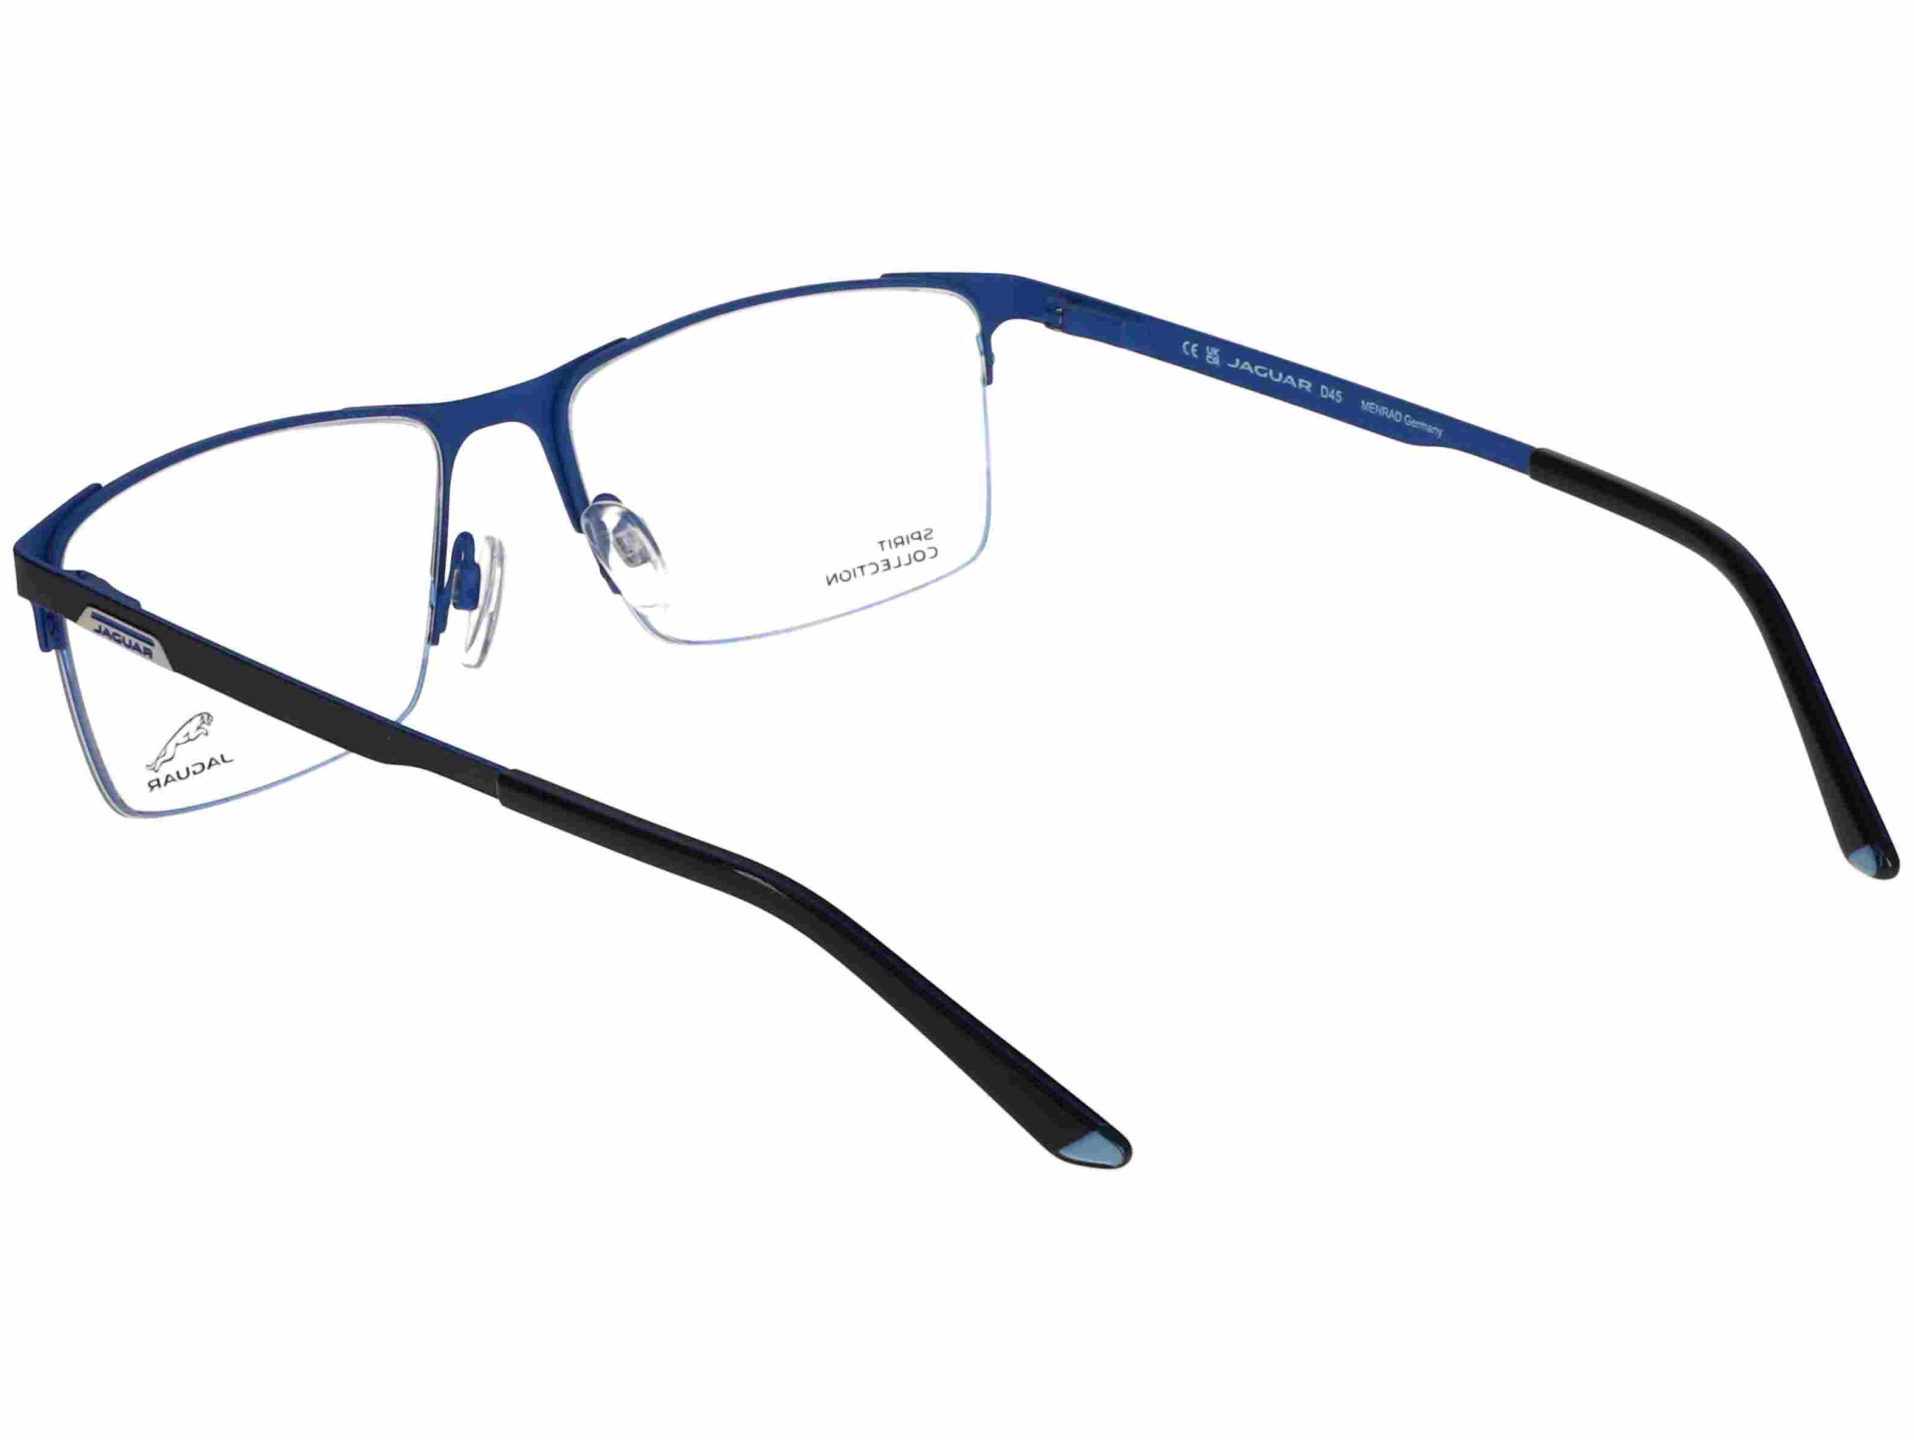 Das Bild zeigt die Korrektionsbrille 3631 3100 von der Marke Jaguar in blau.